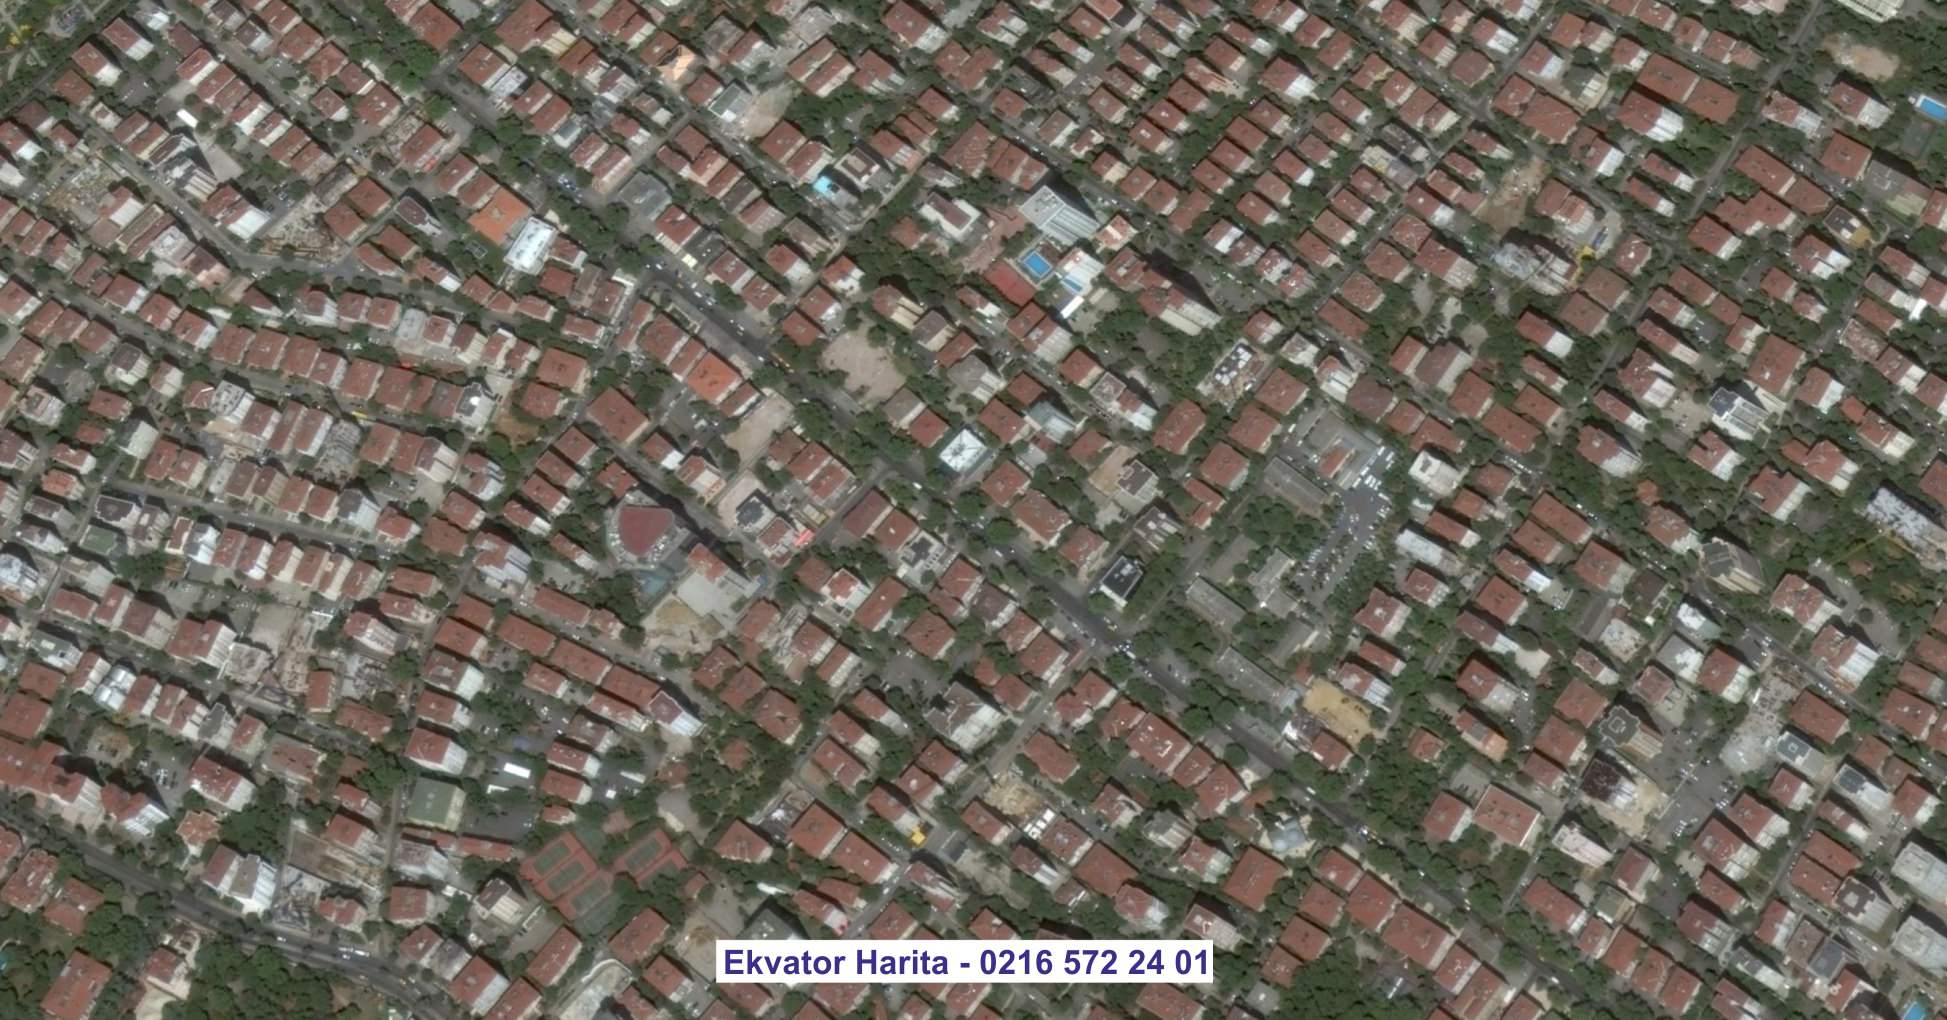 Çeşme Uydu Görüntüsü Örnek Fotoğrafı